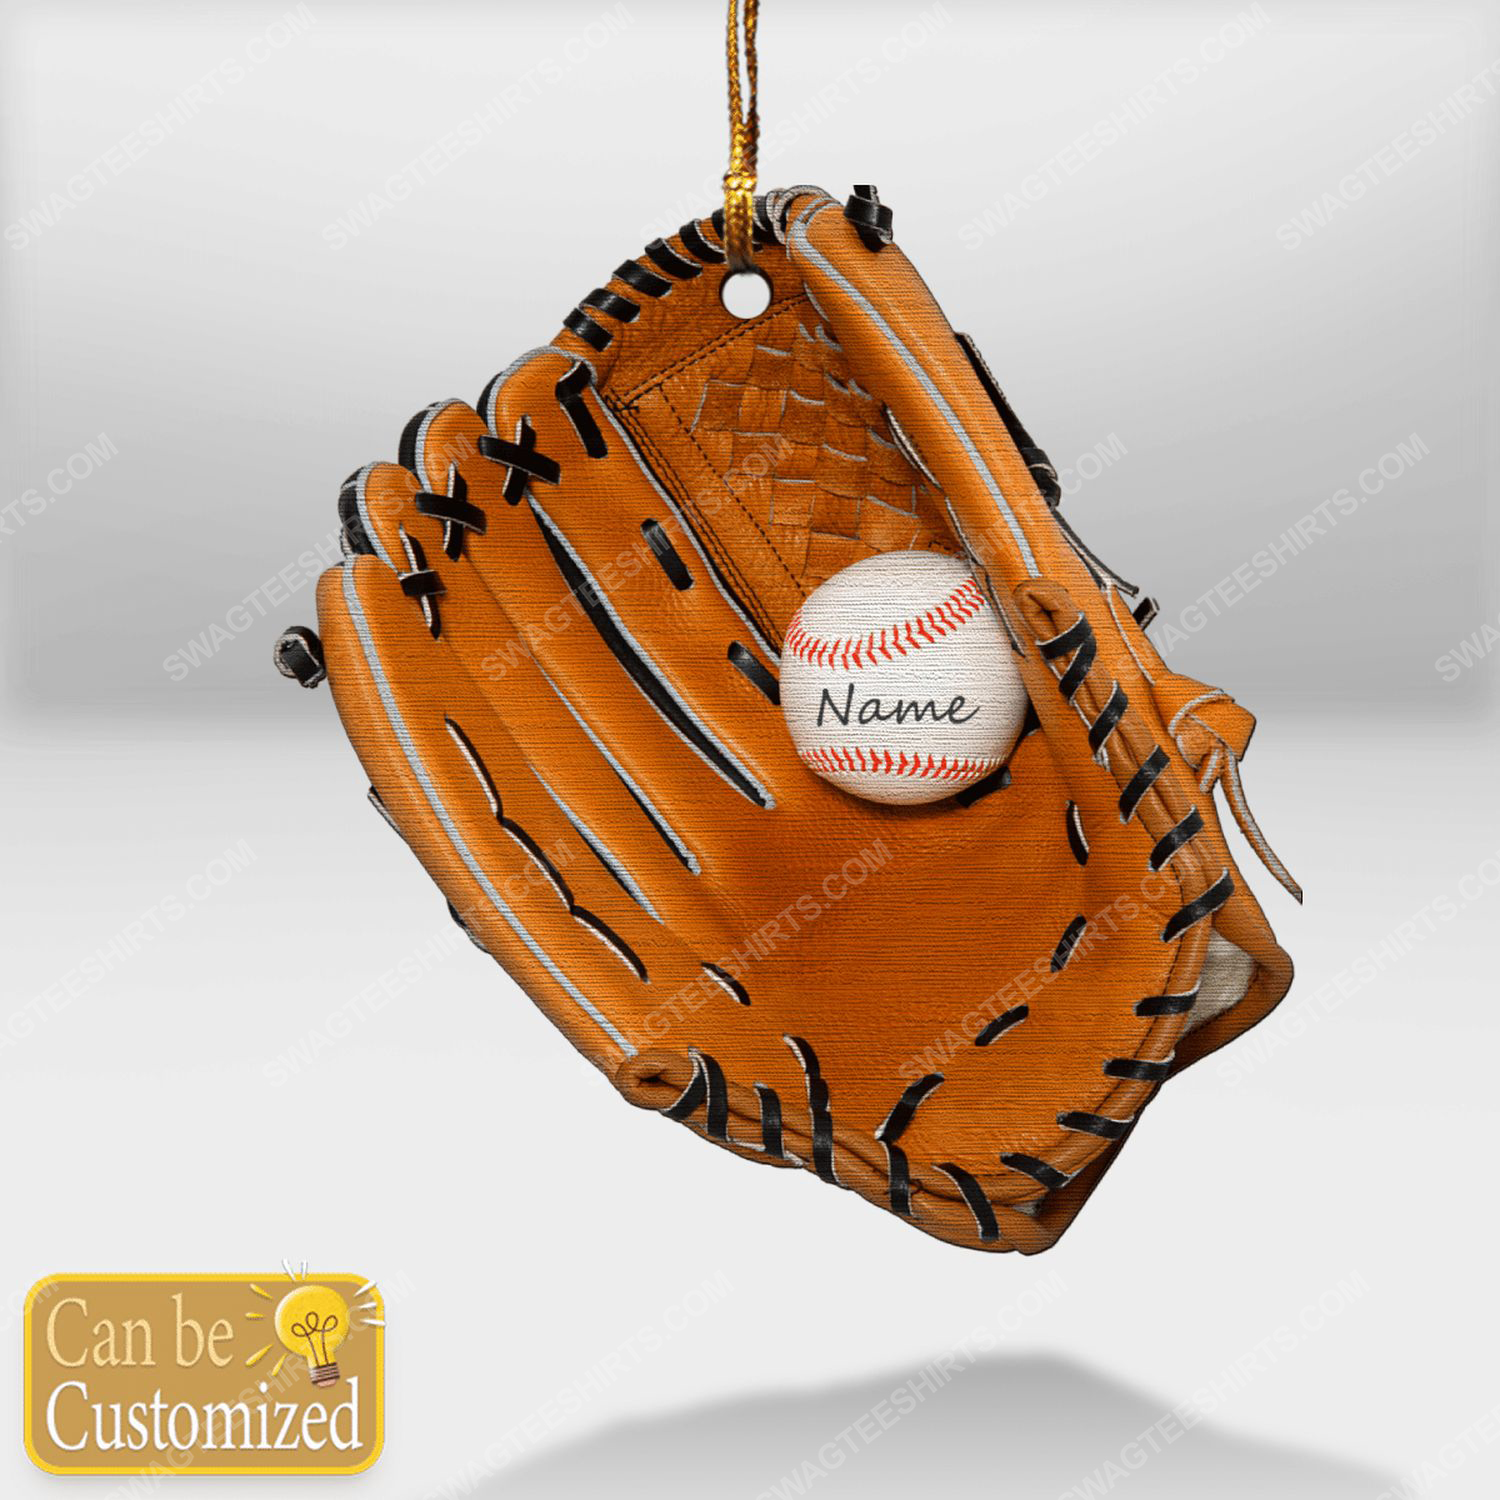 Custom baseball gloves christmas gift ornament 1 - Copy (2)